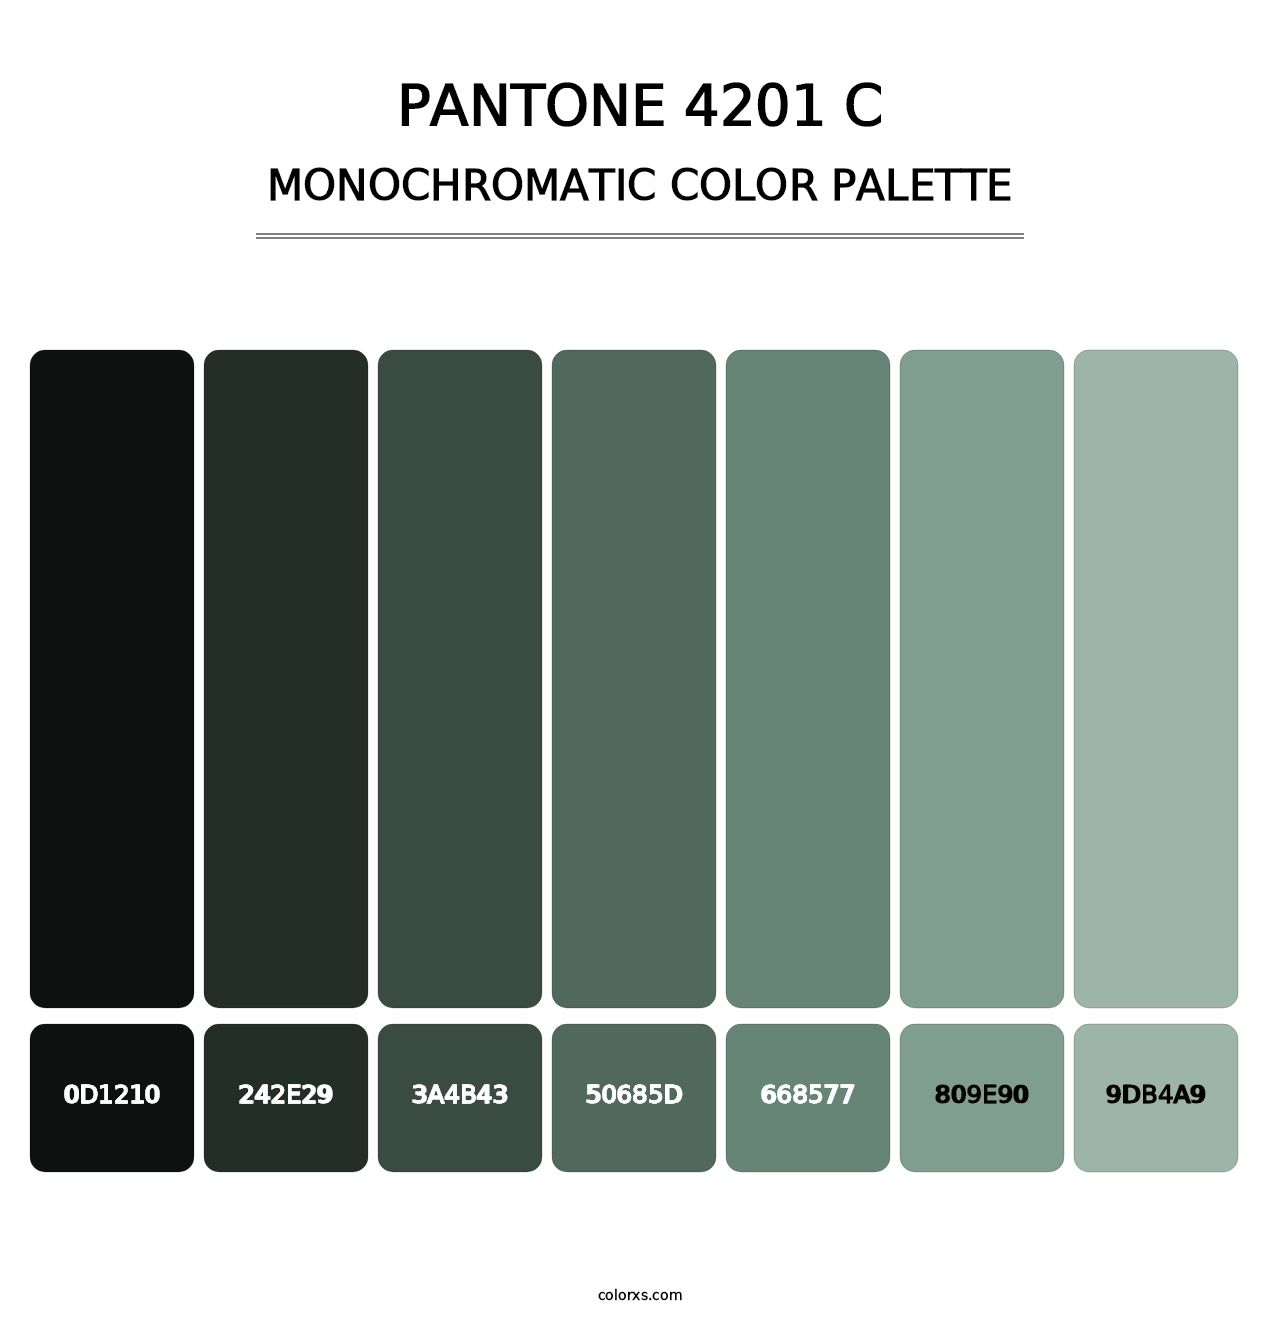 PANTONE 4201 C - Monochromatic Color Palette